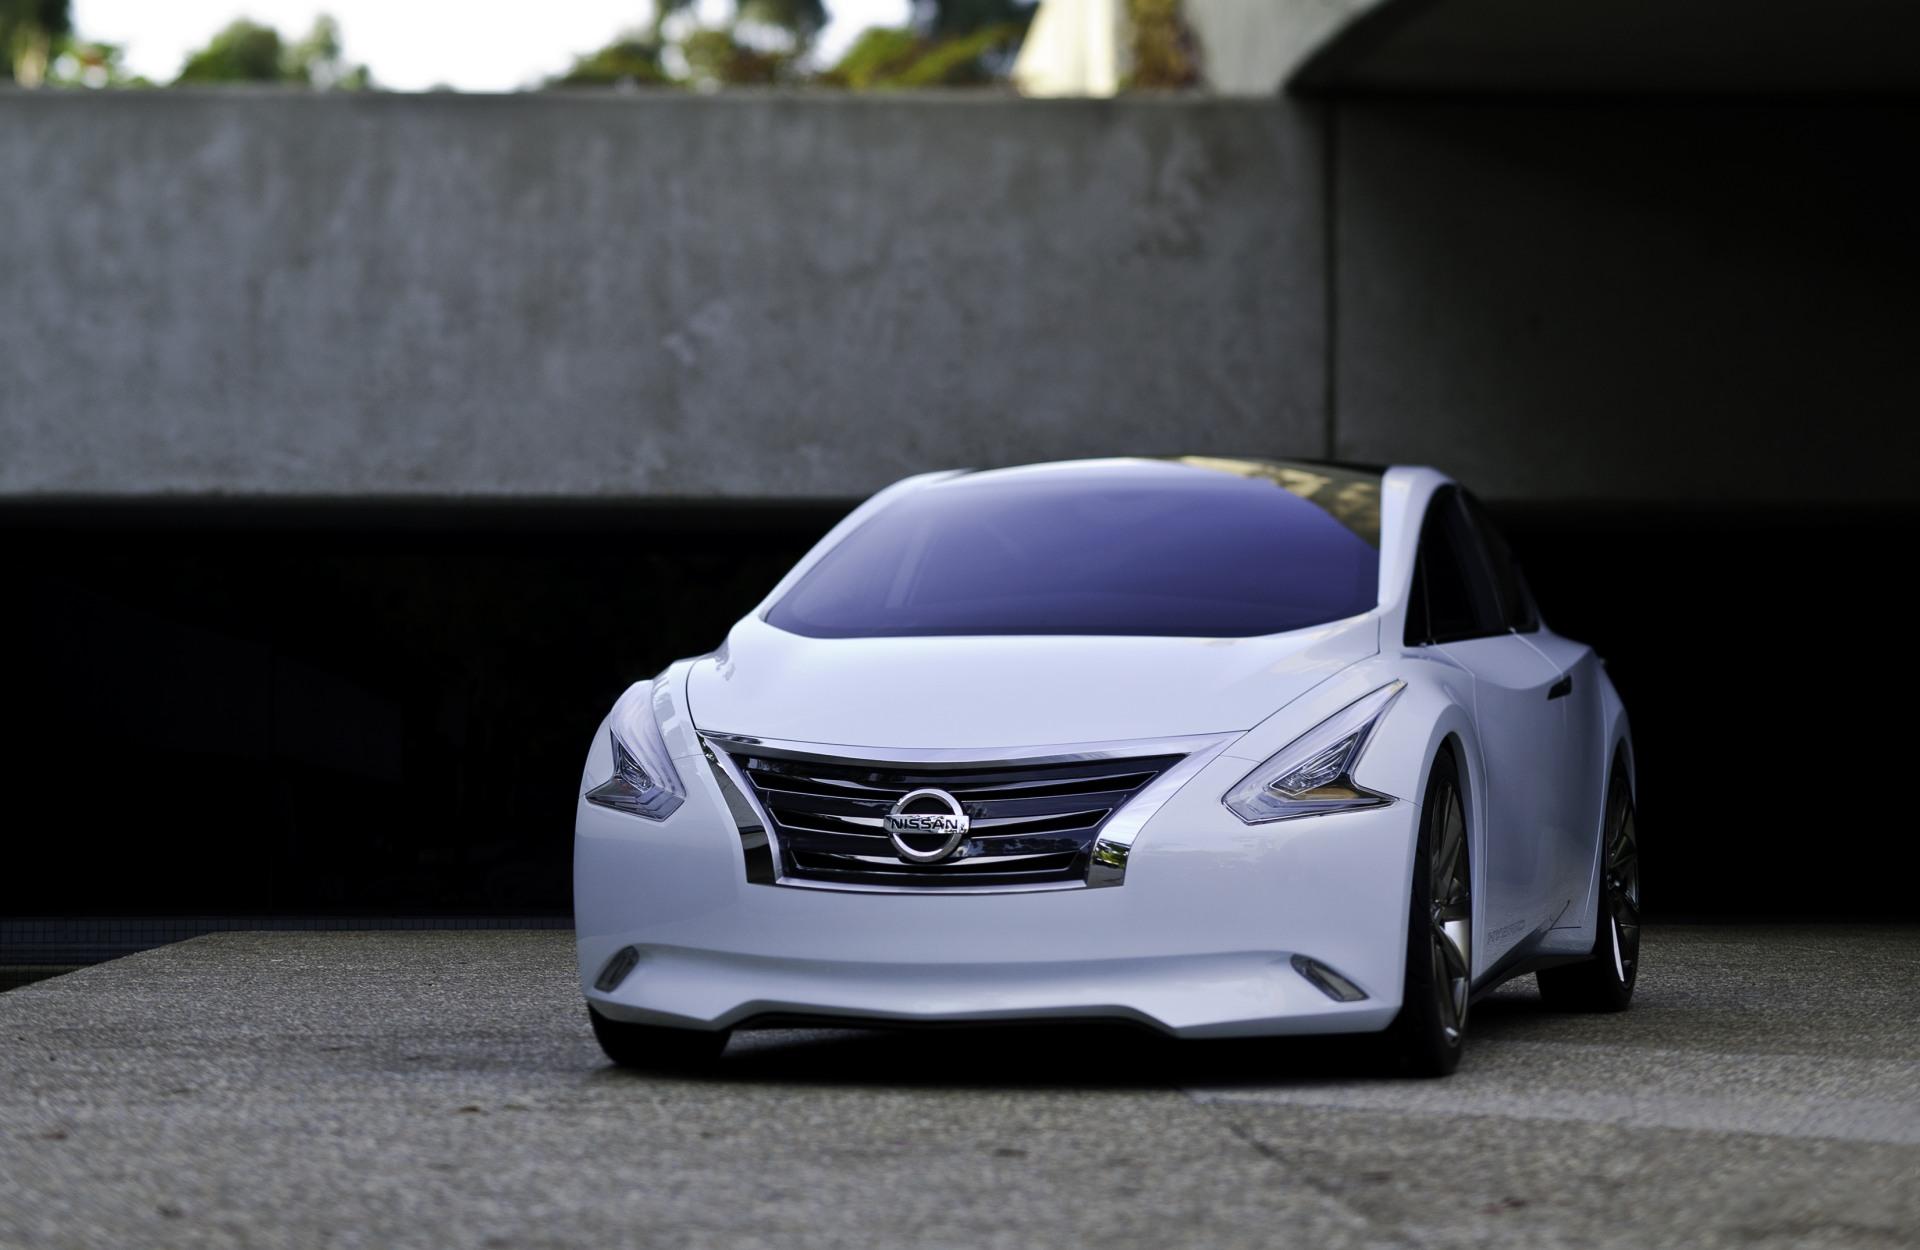 2011 Nissan Ellure Concept